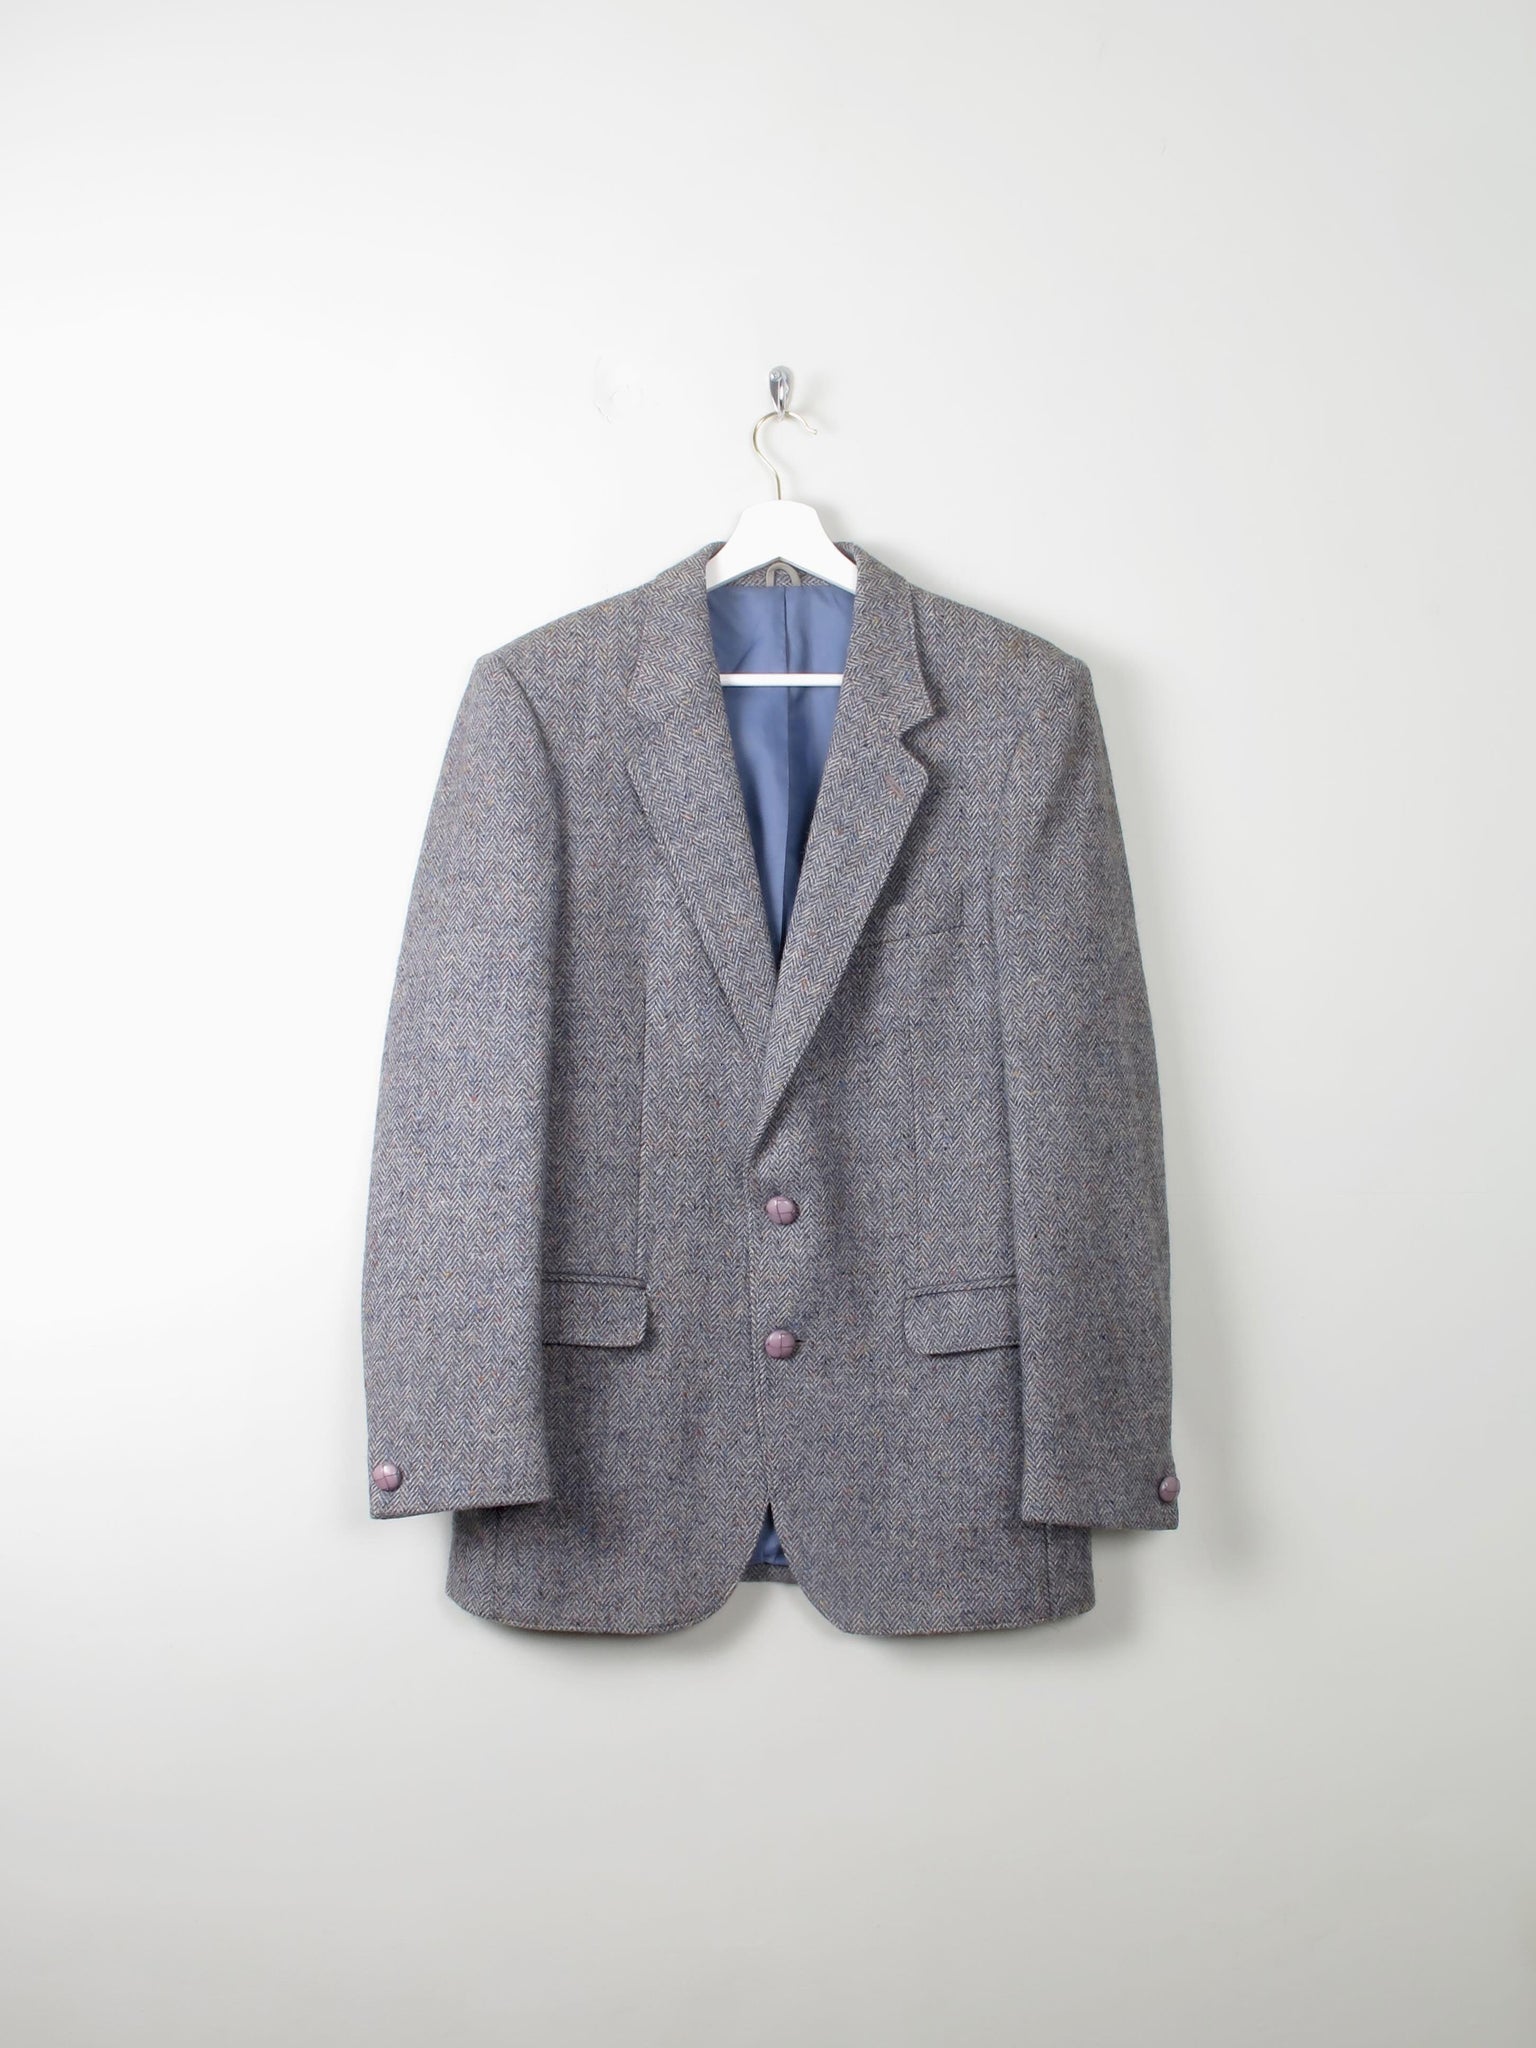 Men's Vintage Blue Donegal Tweed Jacket 38" - The Harlequin